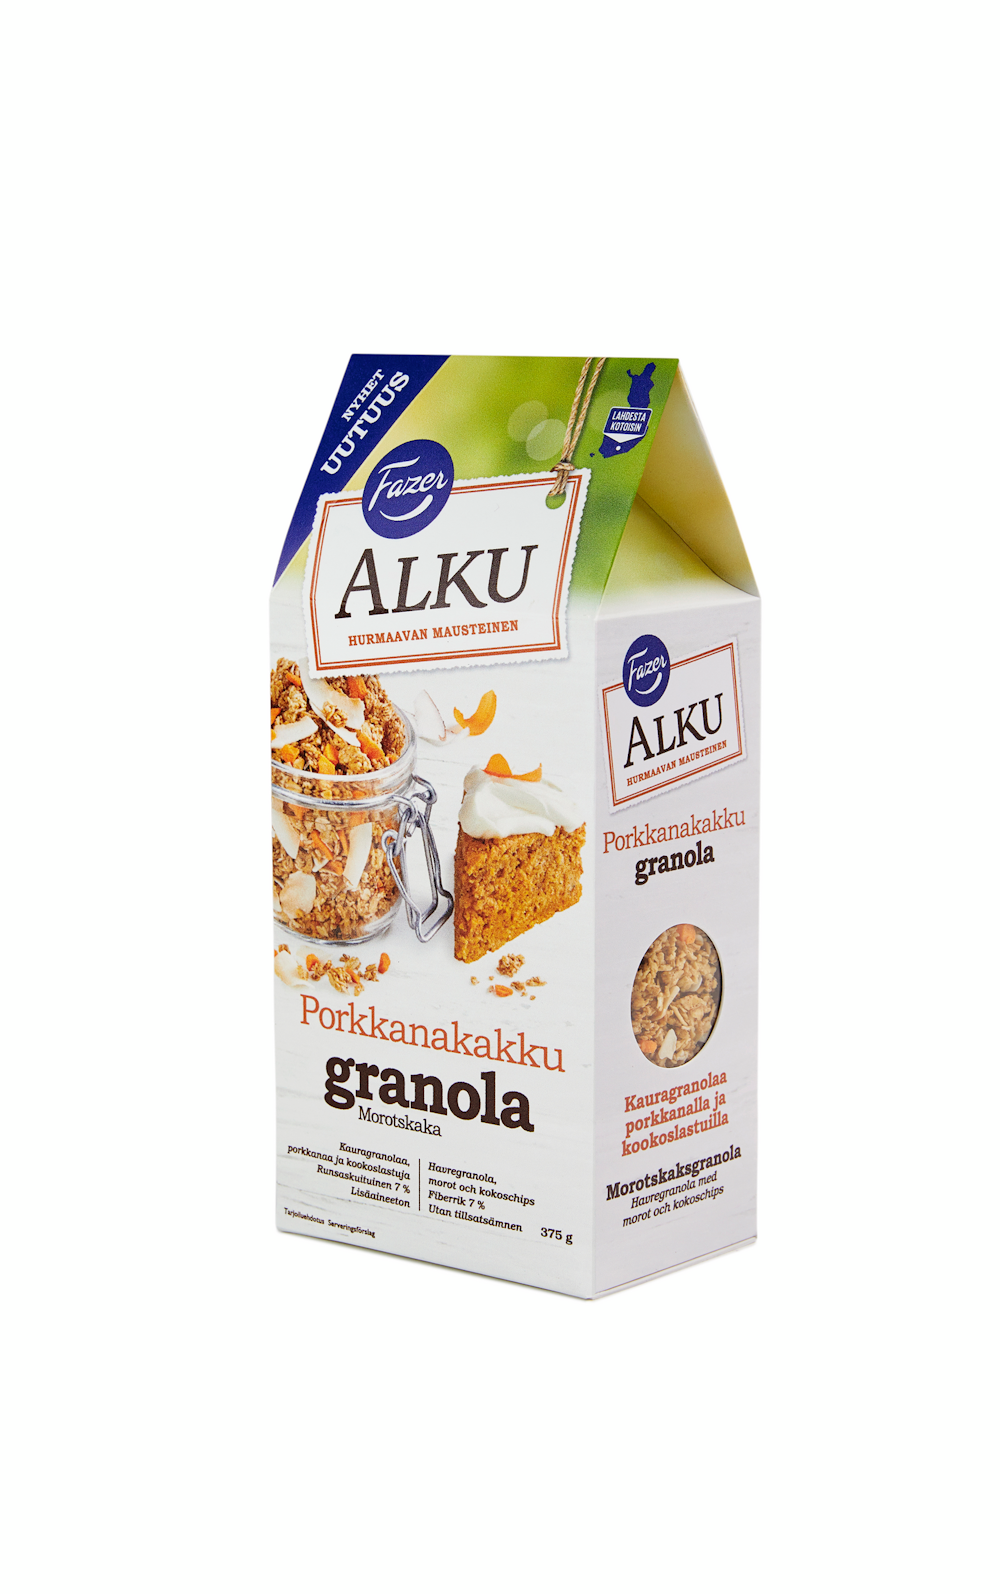 Fazer Alku Porkkanakakku granola 375g — HoReCa-tukku Kespro